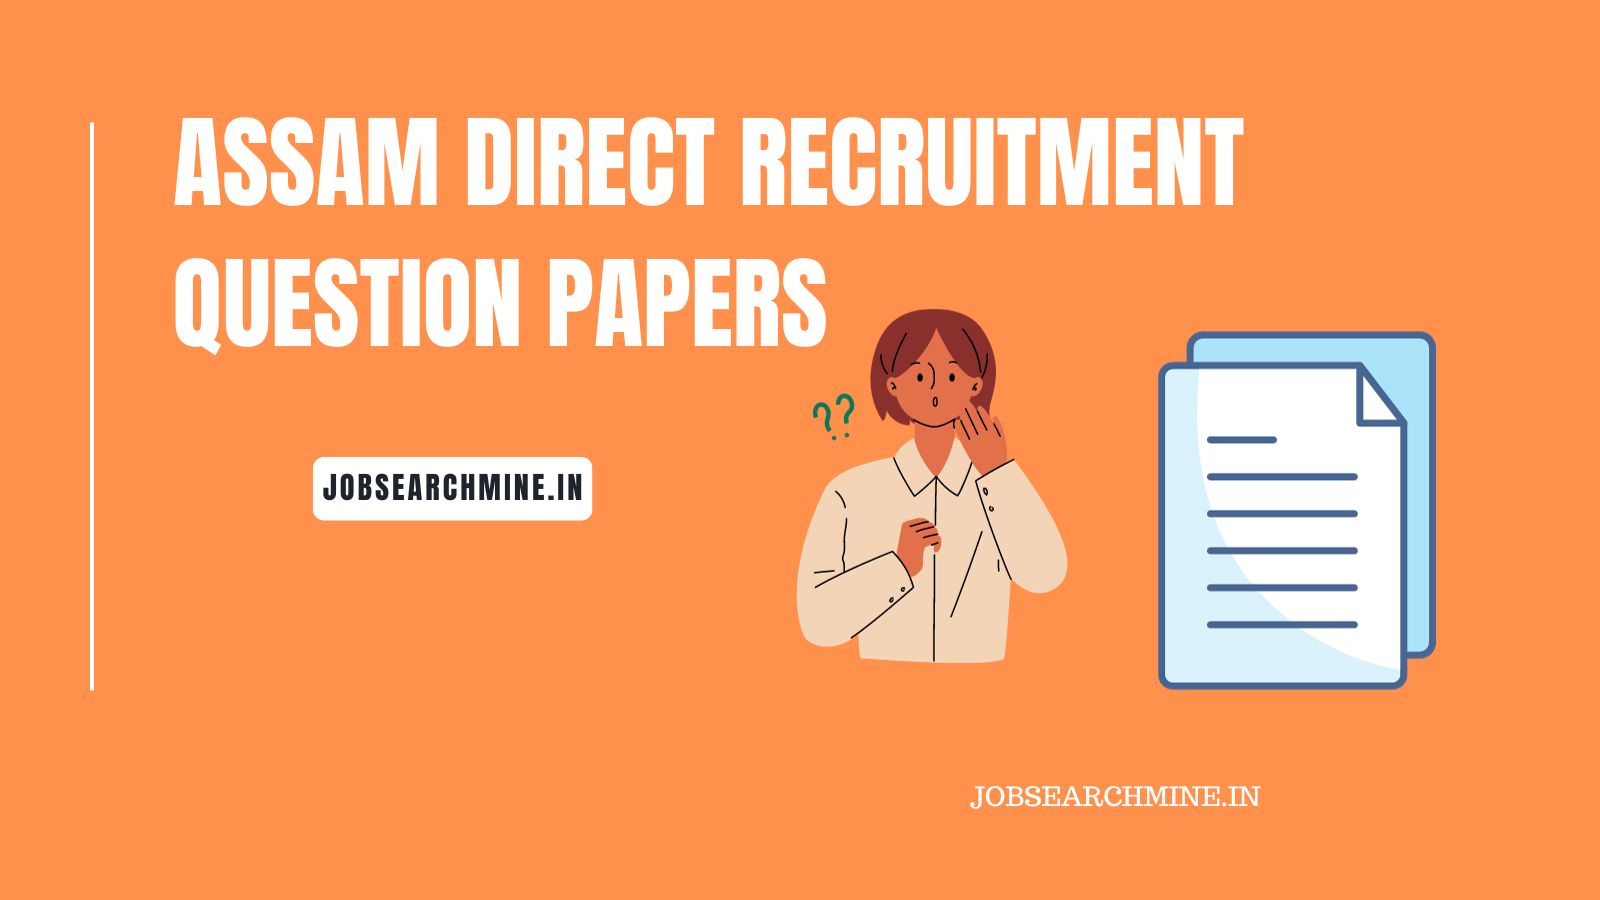 Assam direct recruitment question paper